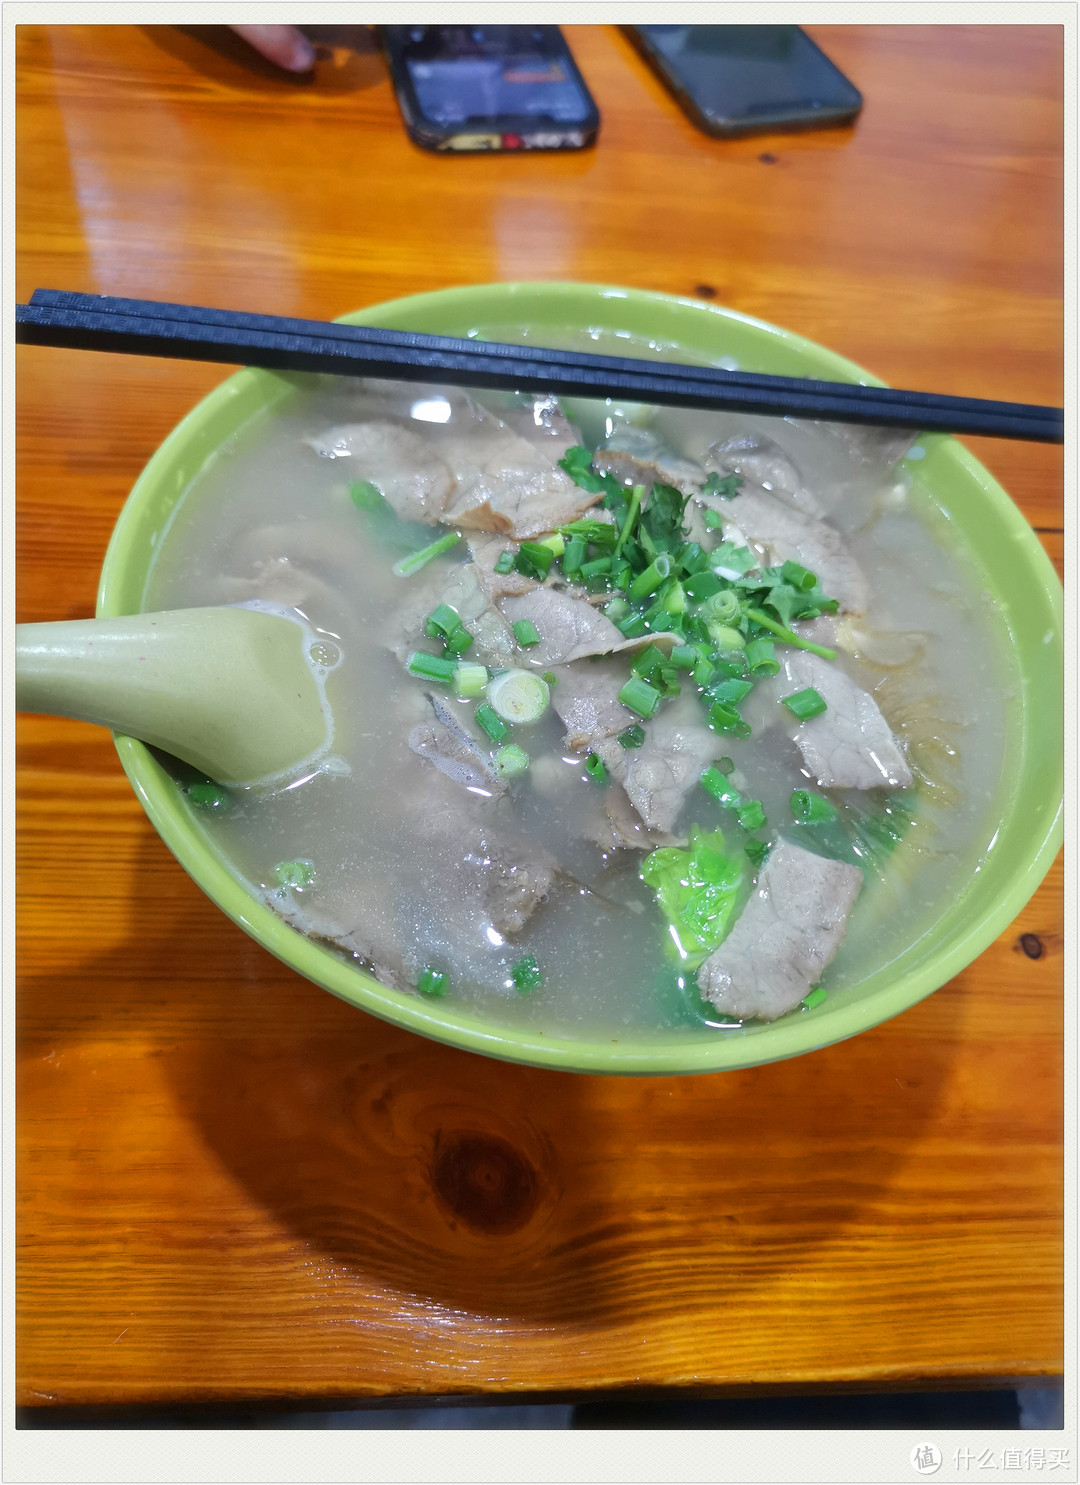 晚上吃了夜宵，这碗粉丝汤才10块钱。。。。比上海便宜多了，而且味道也很不错，牛肉很多片，绝对好评